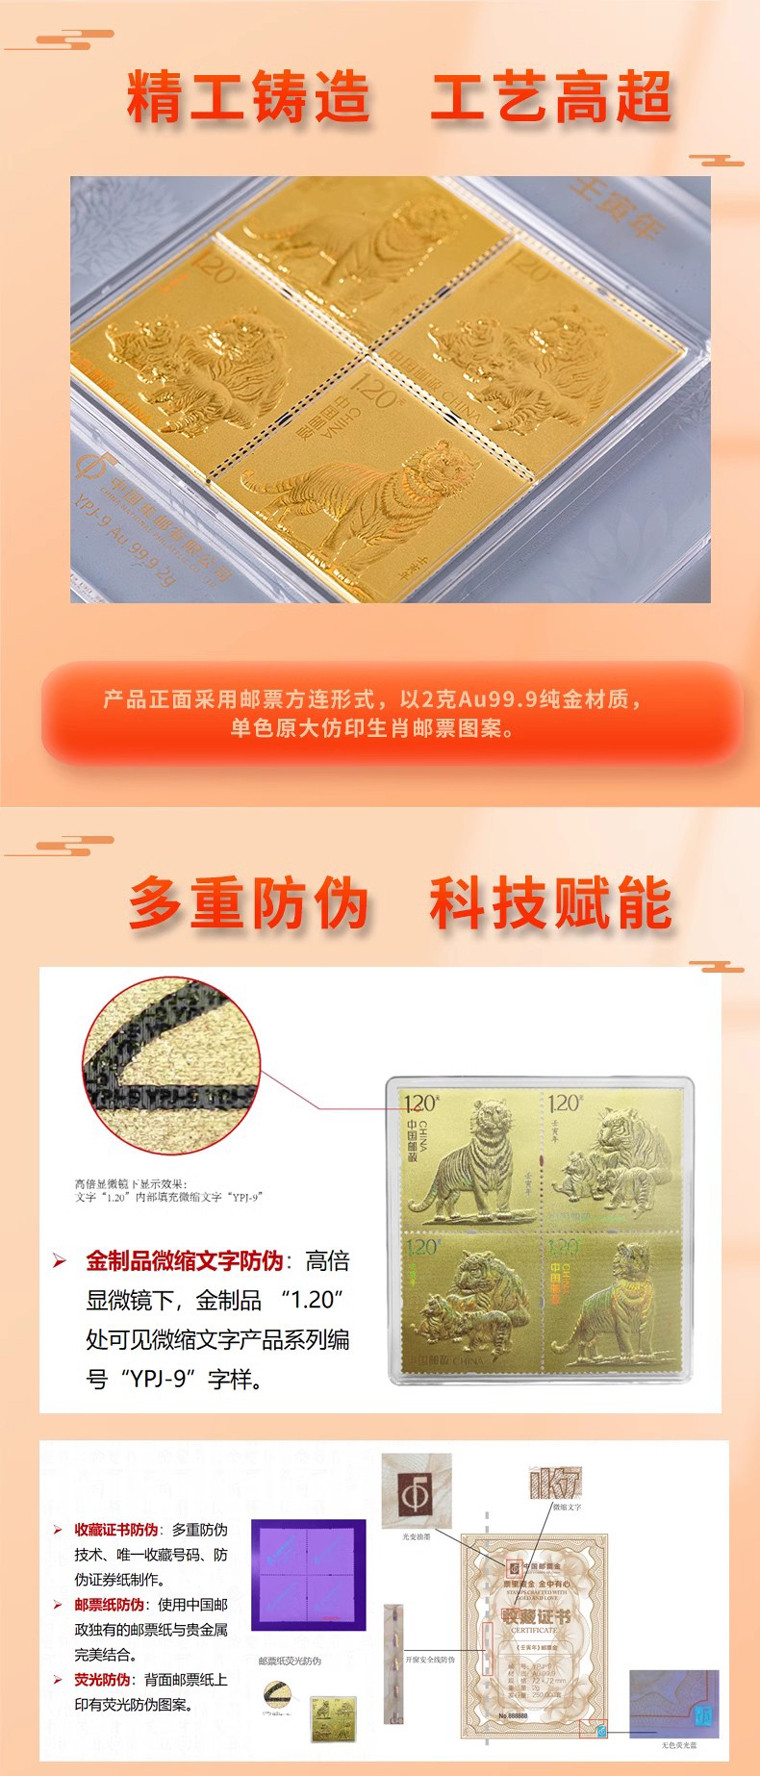 中国邮政 《壬寅年》邮票金